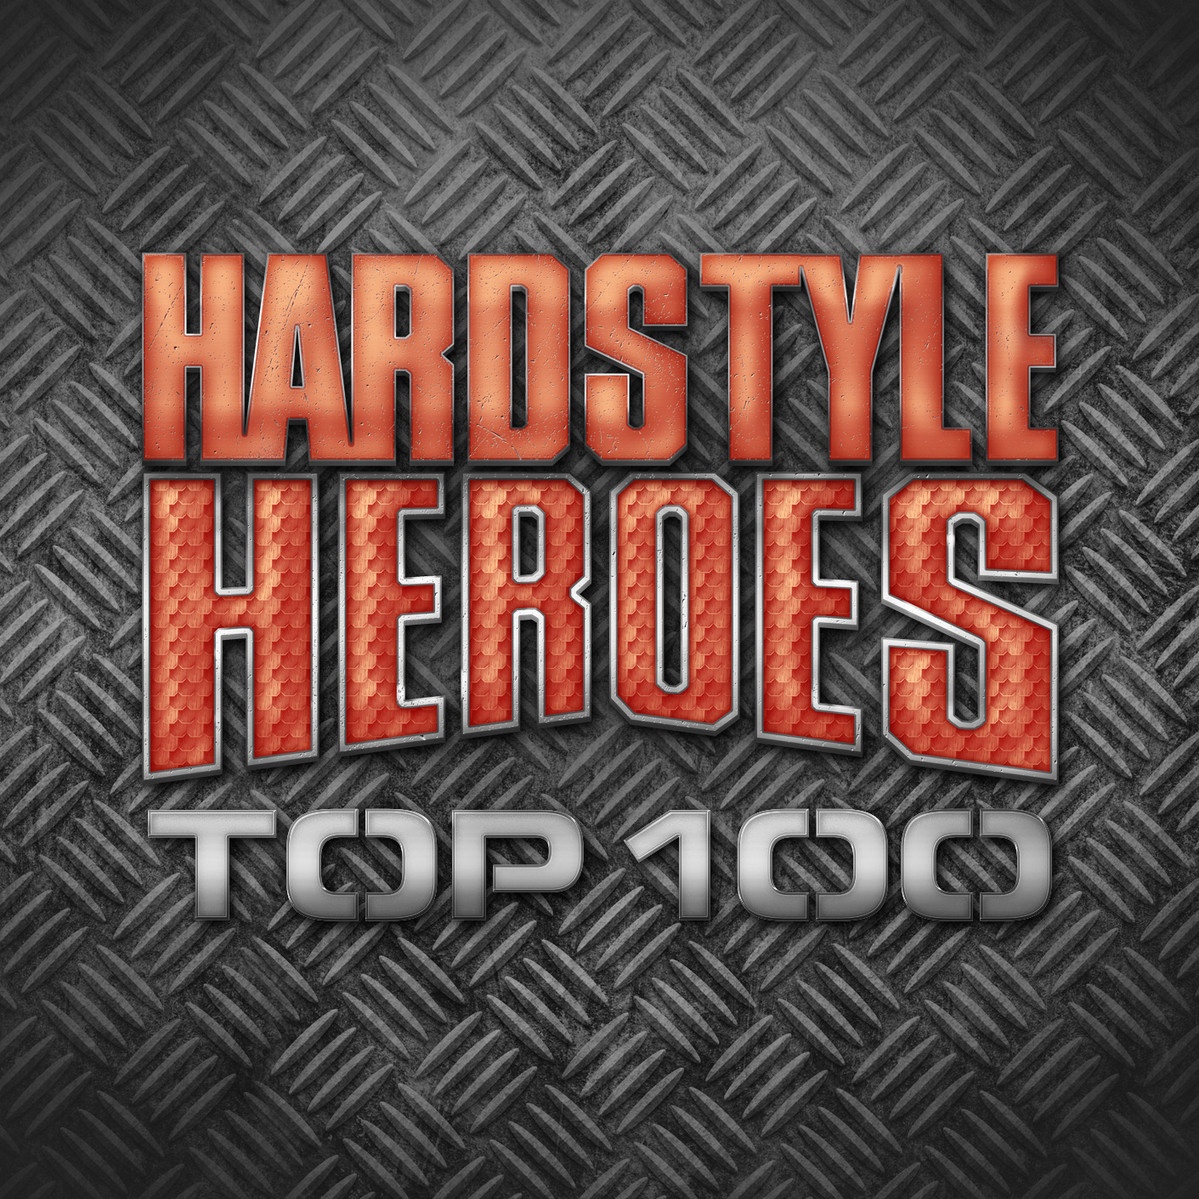 Hardstyle Heroes Top 100 CD1